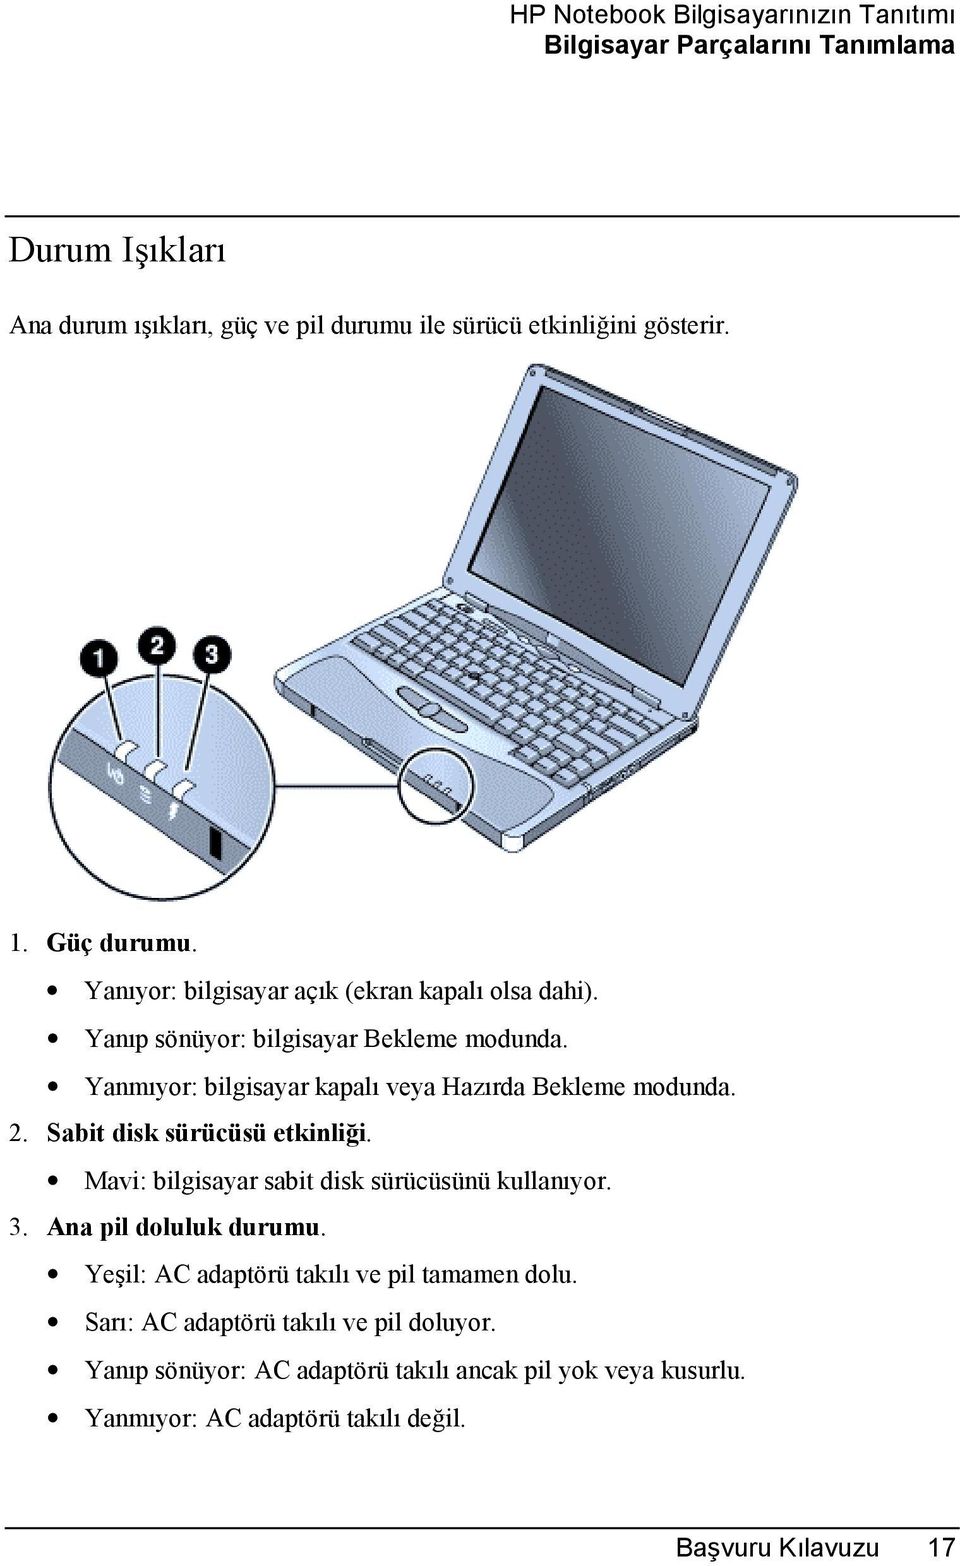 Yanmõyor: bilgisayar kapalõ veya Hazõrda Bekleme modunda. 2. Sabit disk sürücüsü etkinliği. Mavi: bilgisayar sabit disk sürücüsünü kullanõyor. 3.